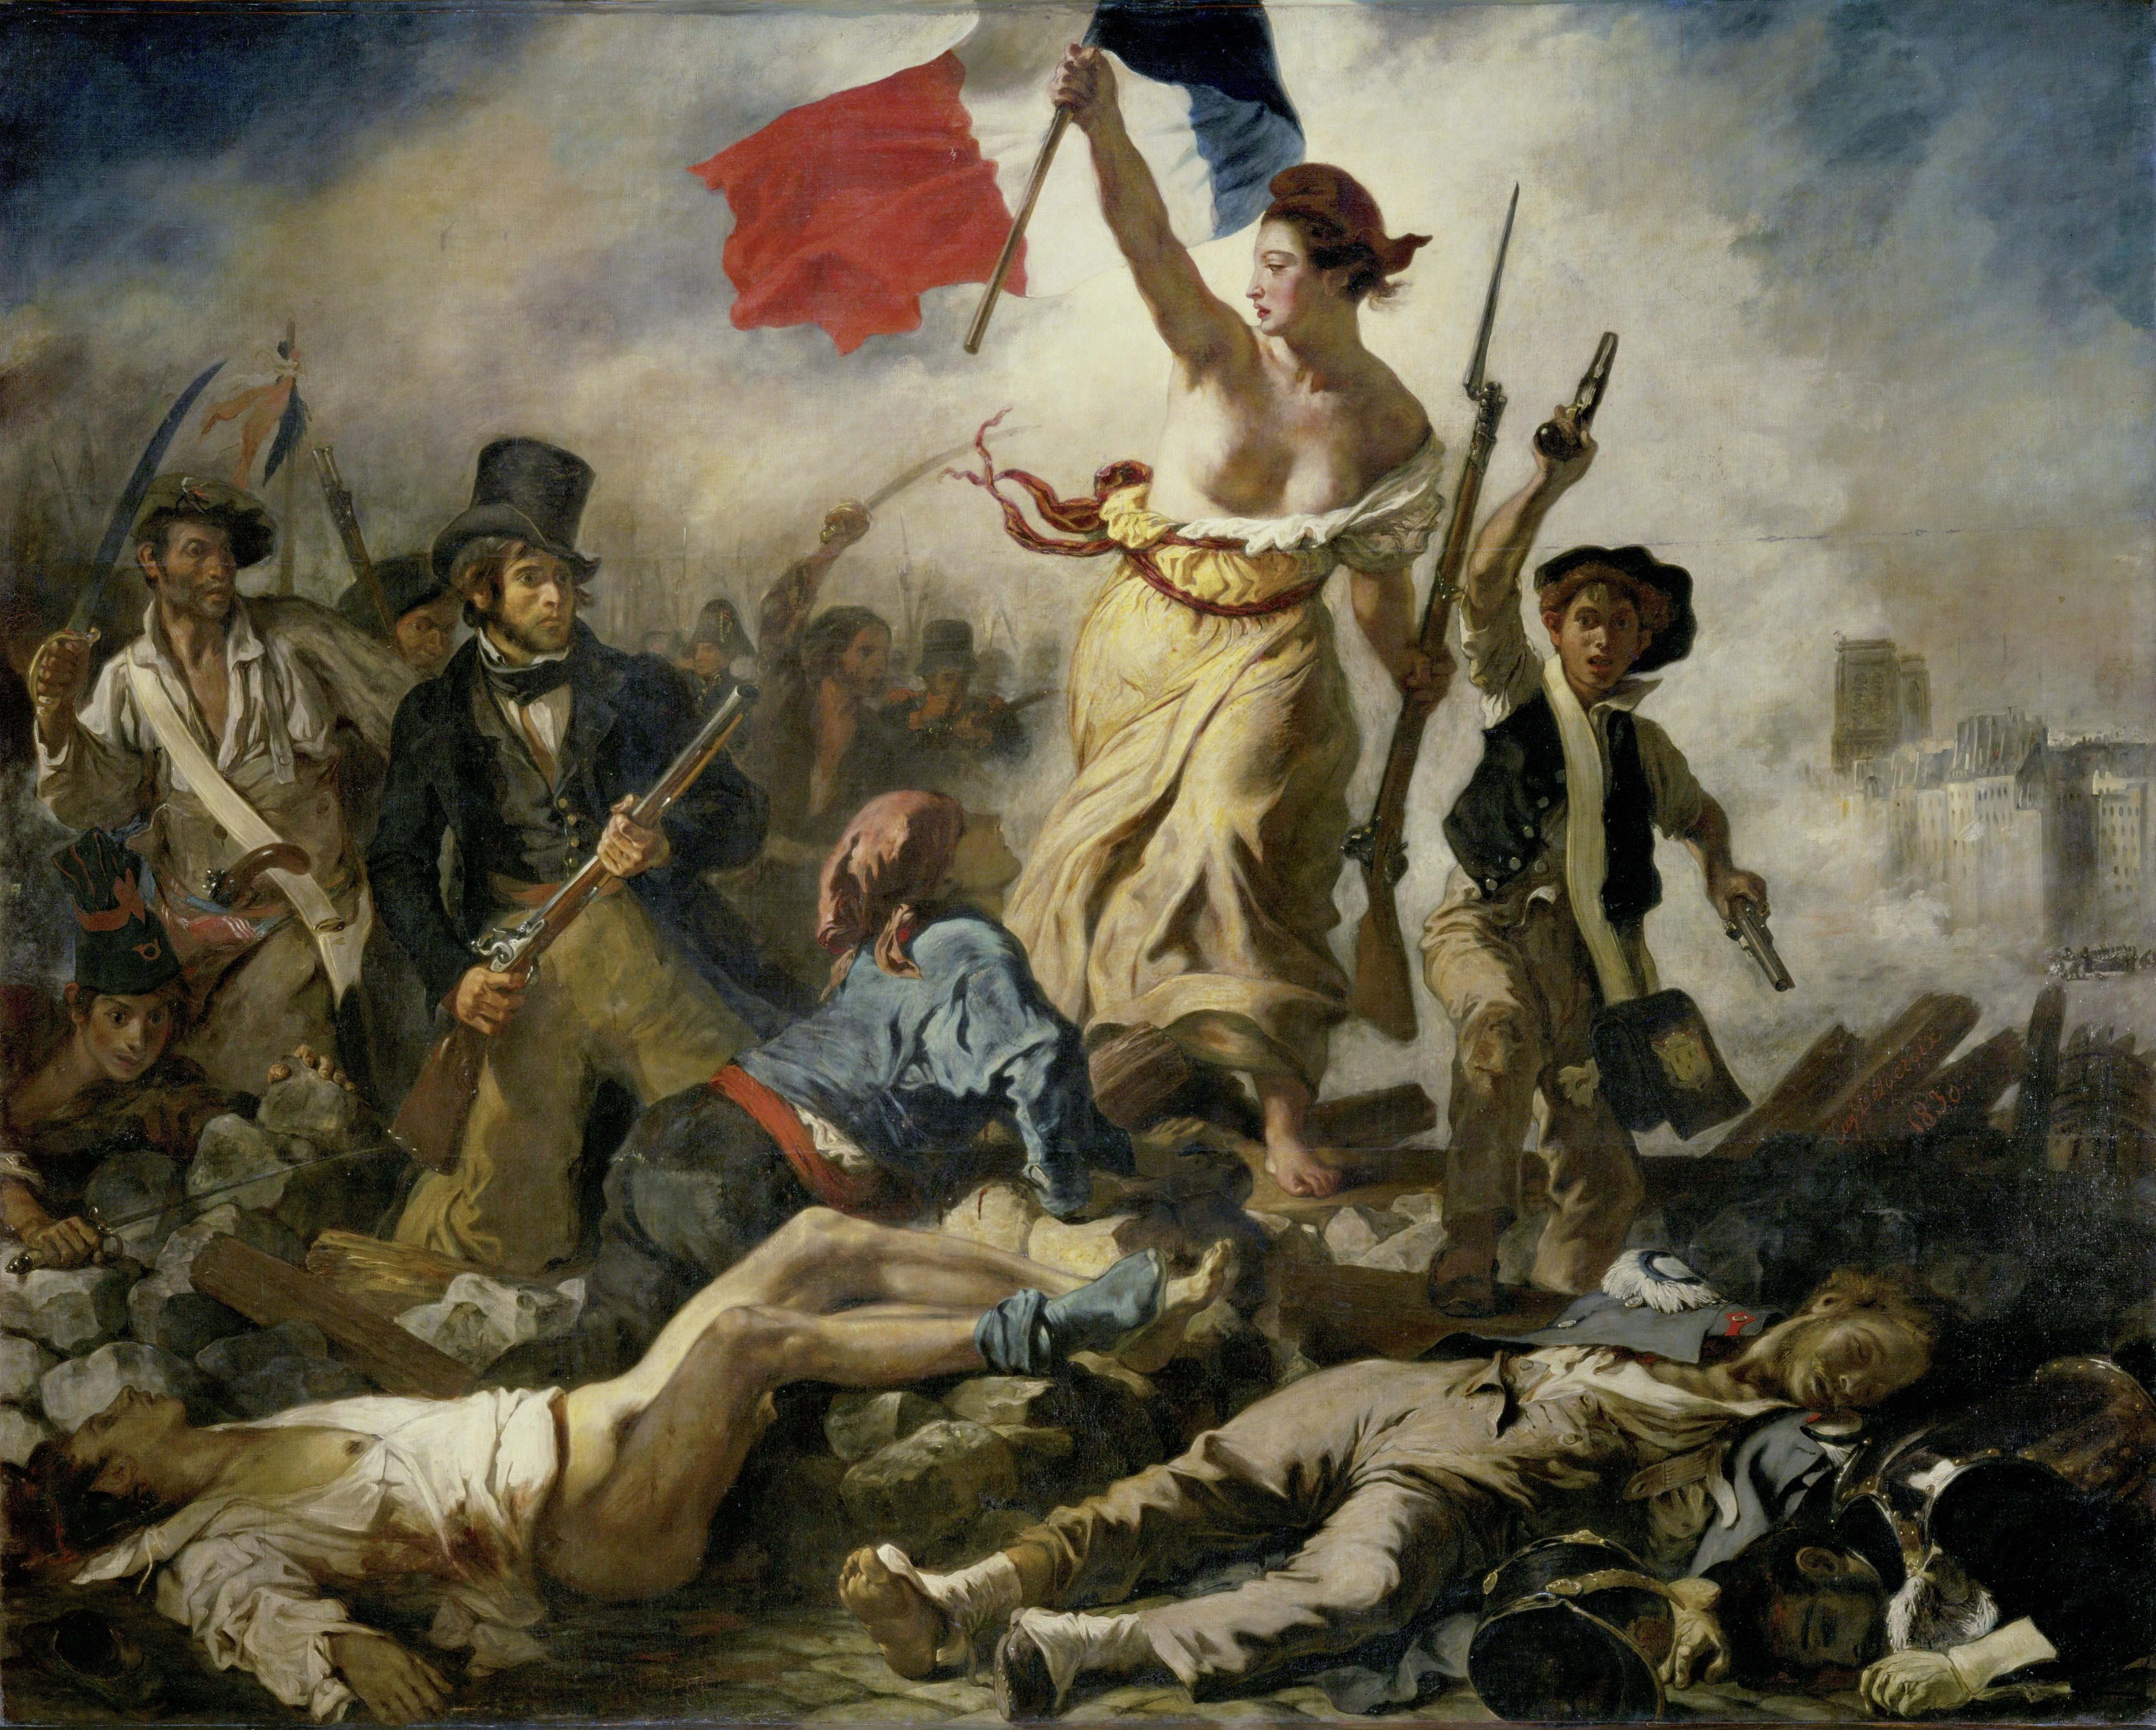 63ad57492525d_Eugène_Delacroix_-_Le_28_Juillet._La_Liberté_guidant_le_peuple.jpg